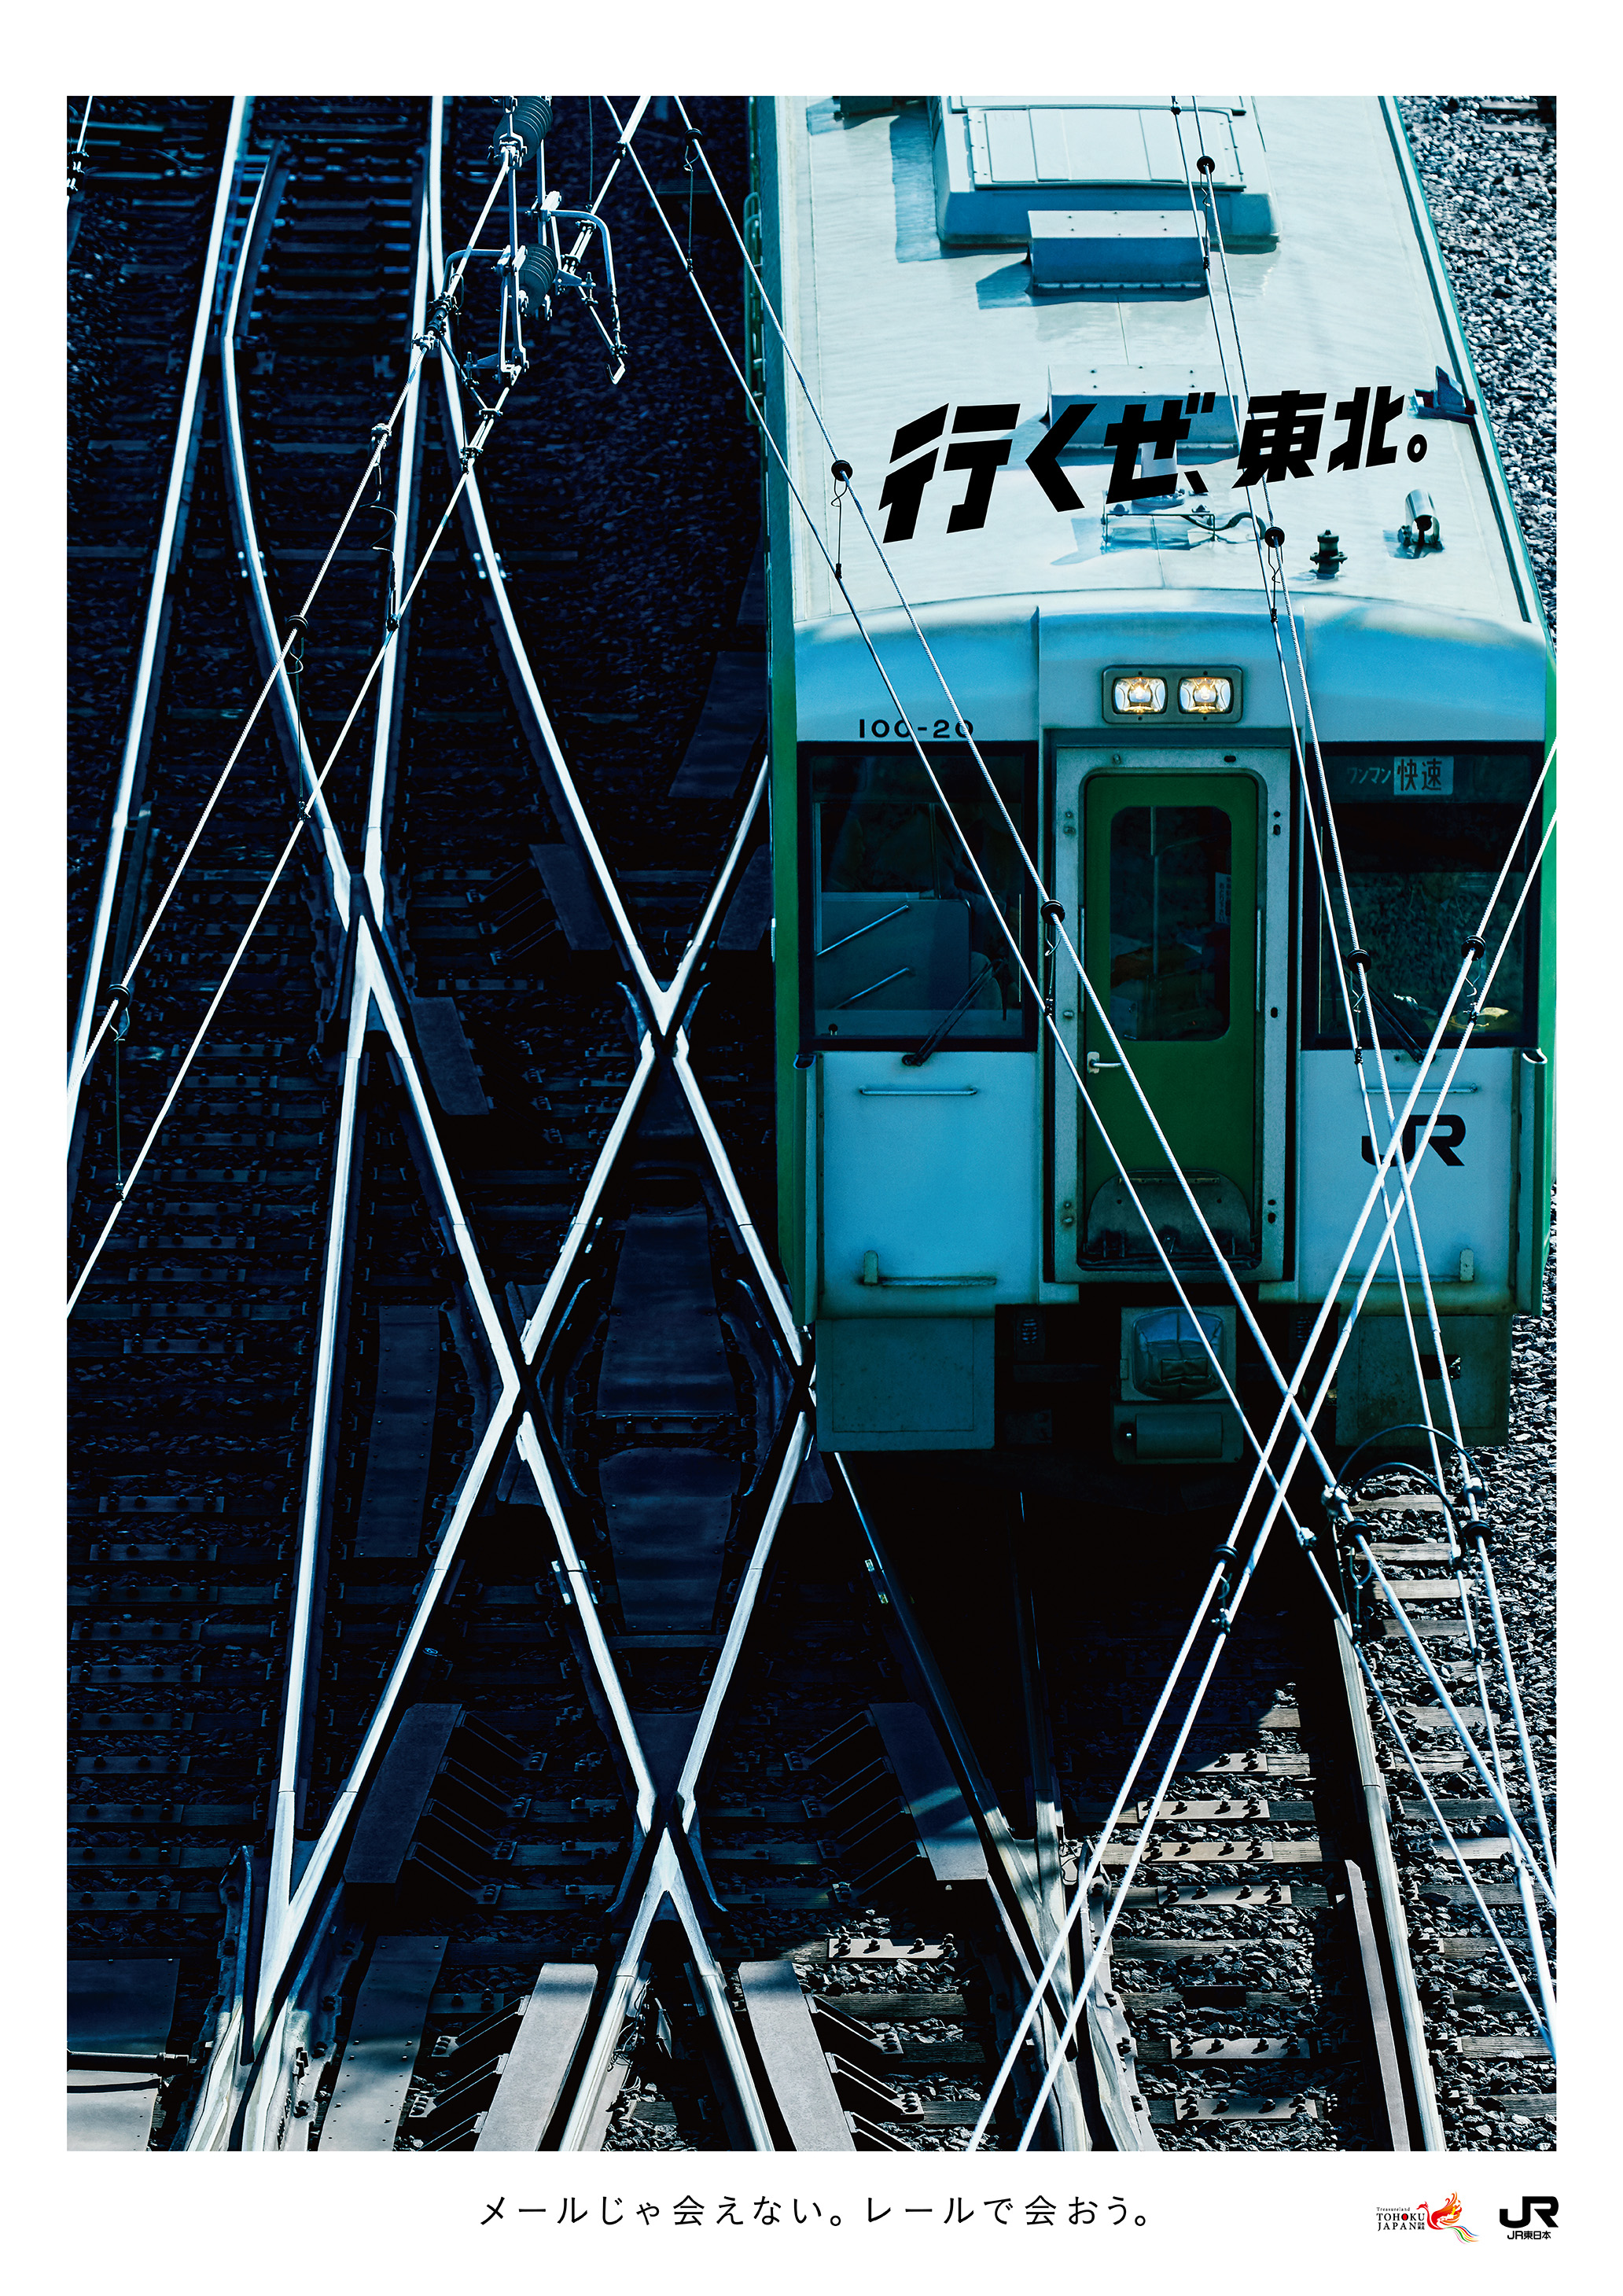 JR_ikuze_2016_summer_B1_train_160512_fin_ol